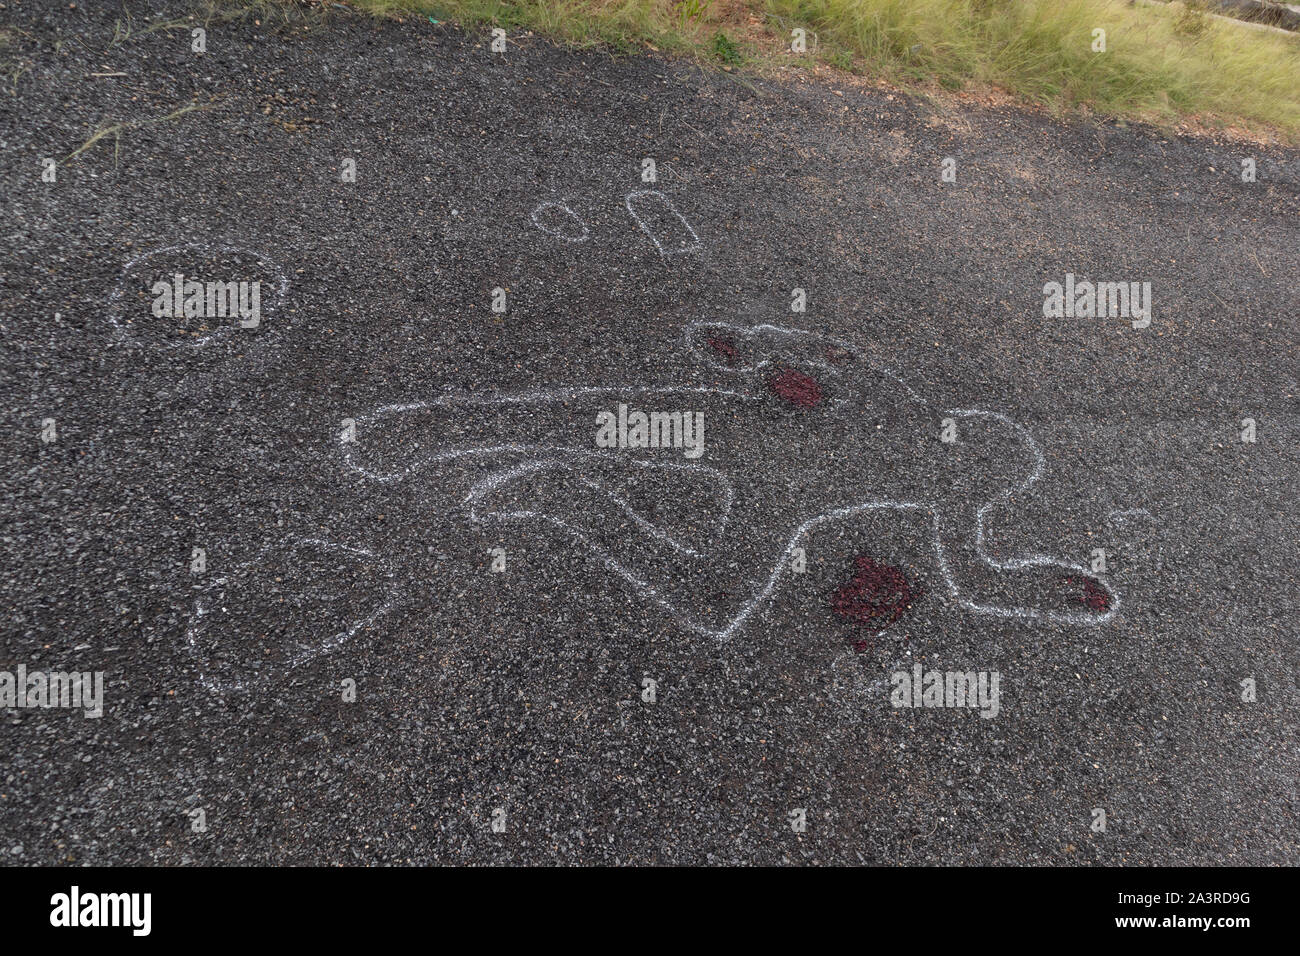 Esquema de tiza de la escena del crimen de la víctima cuerpo muerto en carretera con sangre, el concepto de investigación de asesinato Foto de stock